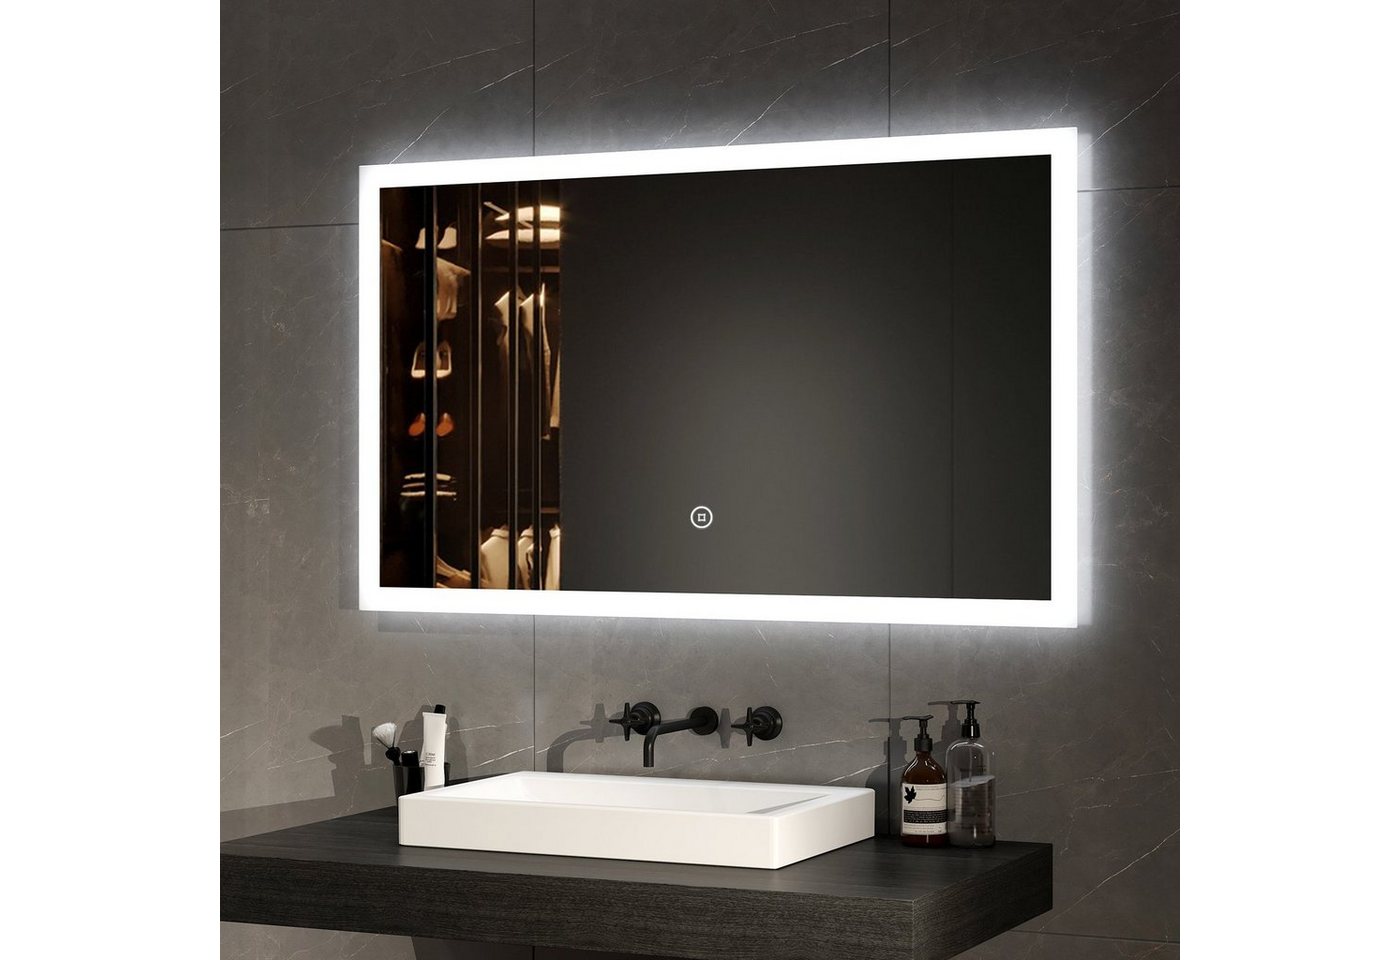 EMKE Badspiegel EMKE LED Badspiegel 100x60cm Badezimmerspiegel, mit Warmweiß/Kaltweiß/Natürliches Licht und Touch-schalter von EMKE